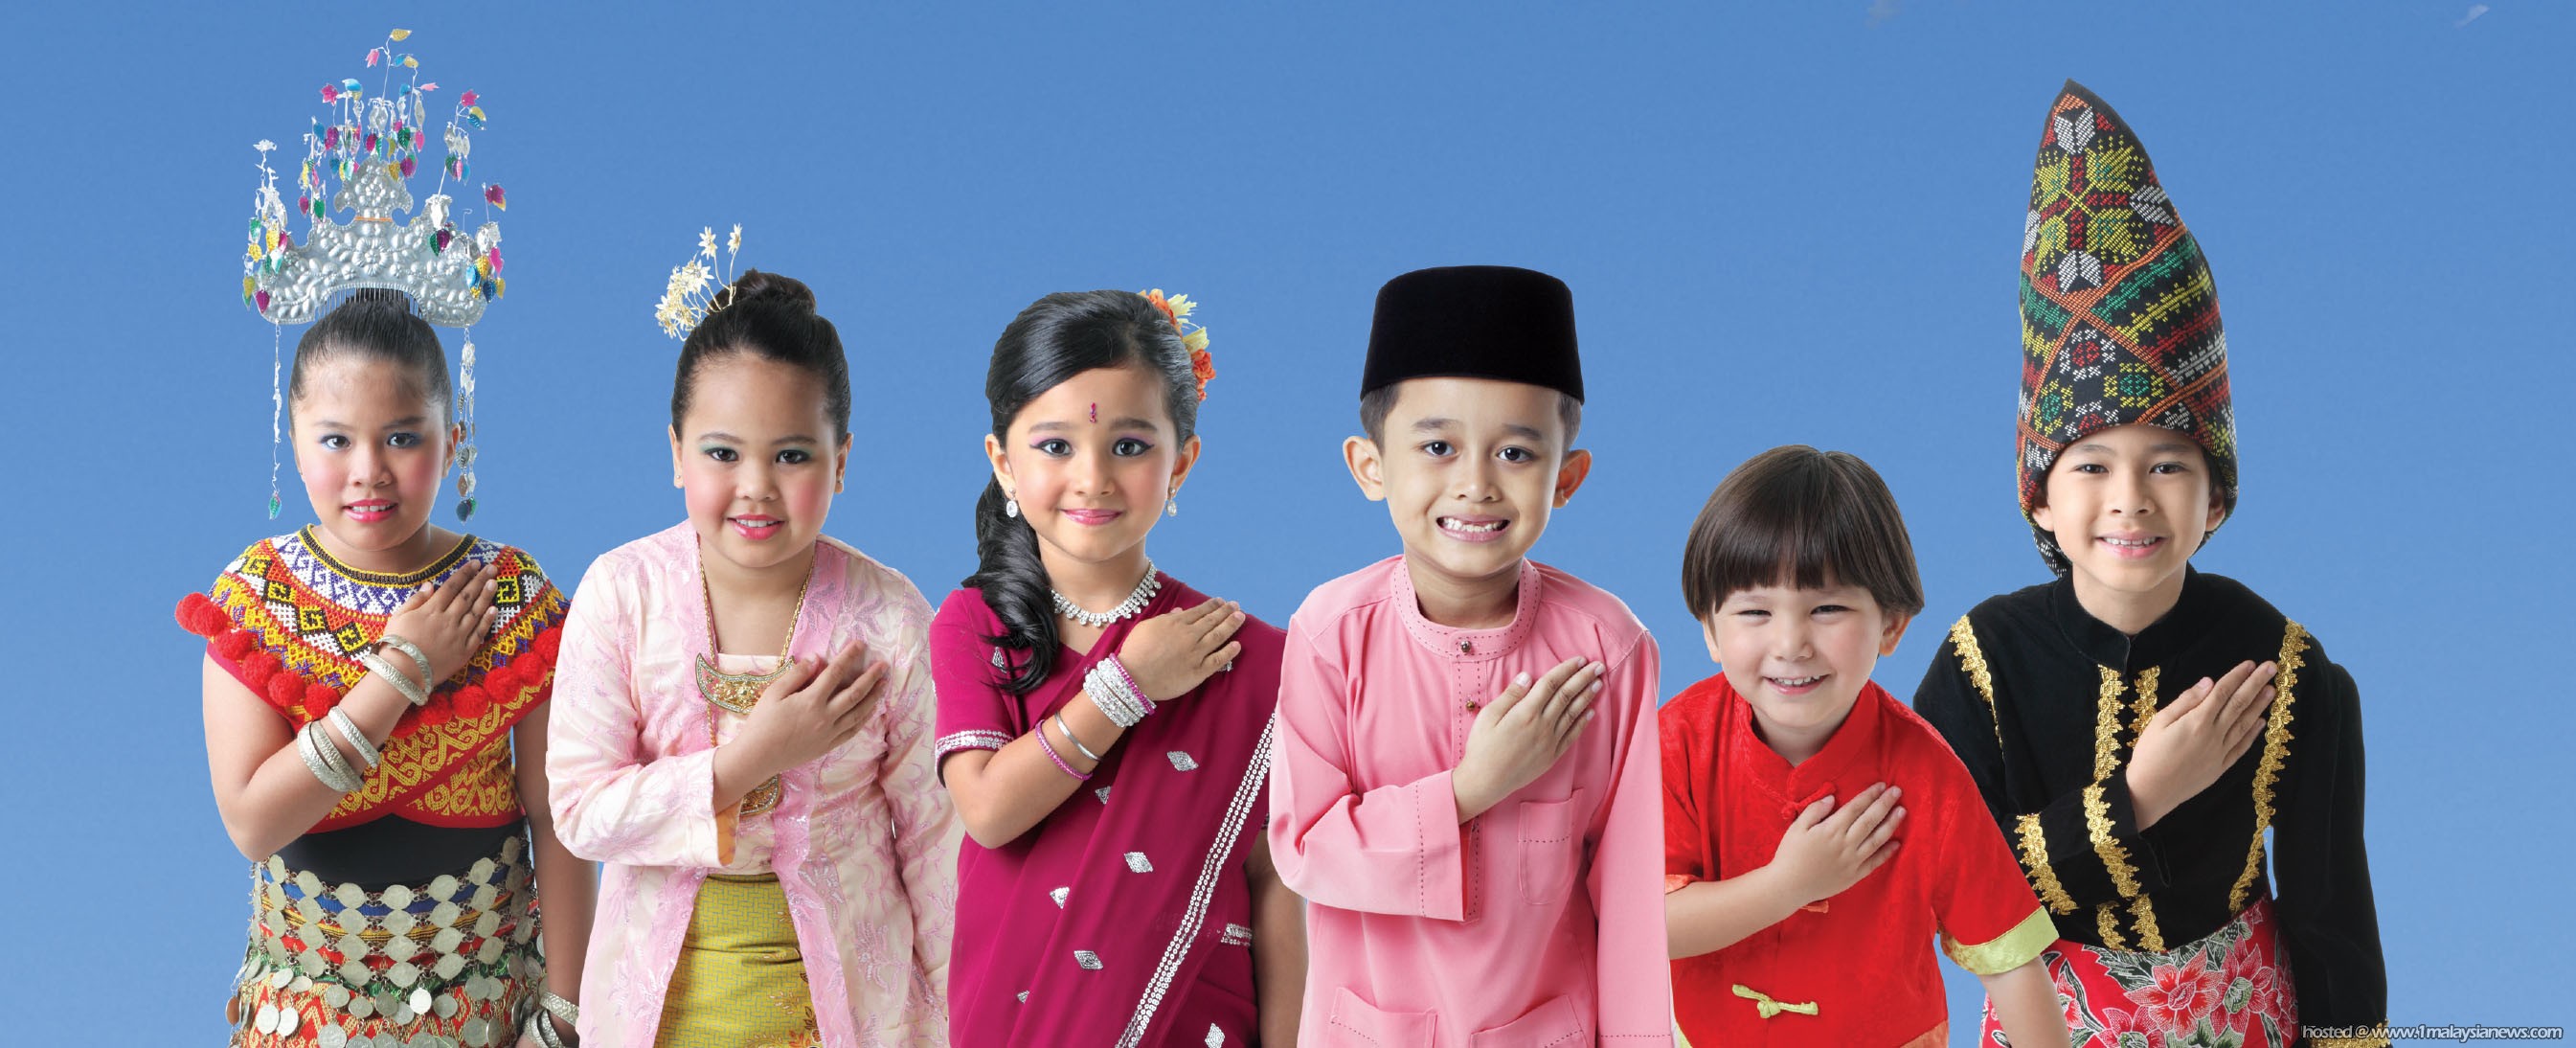 Дети в национальных костюмах. Дети Азии. Народы Азии для детей. Национальный костюм азиатов.